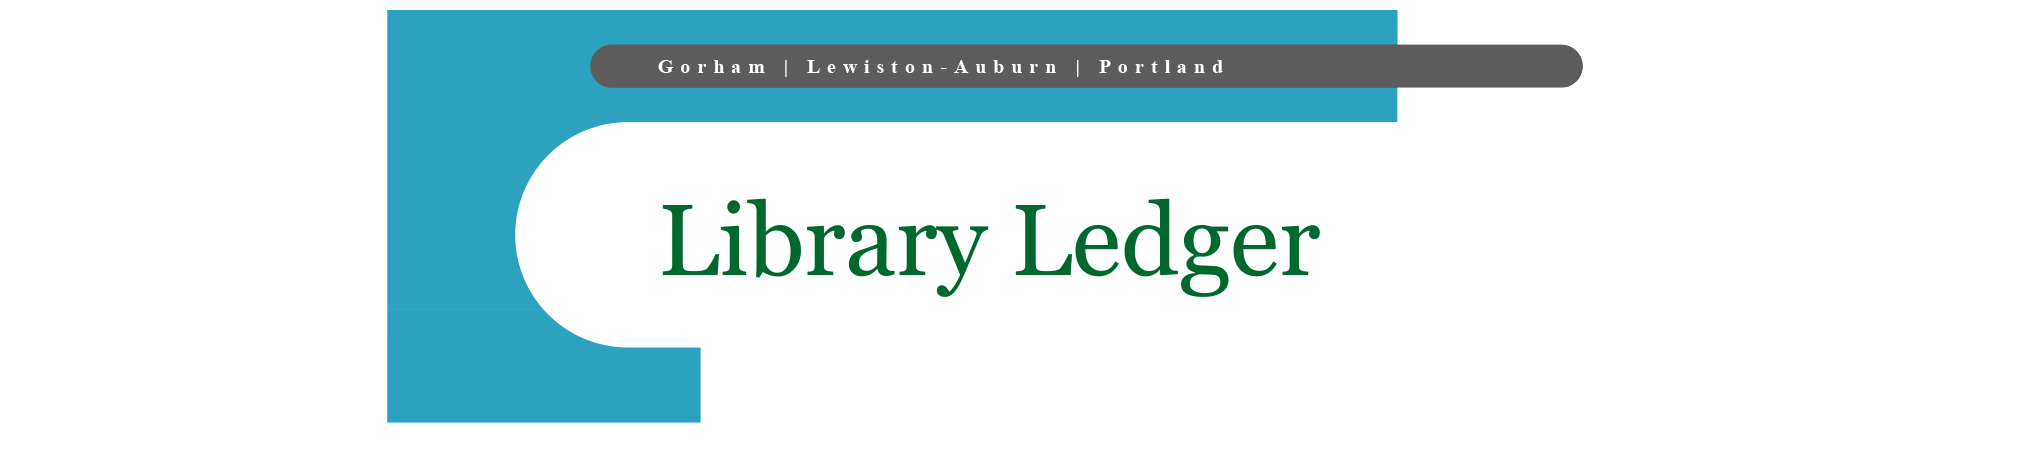 Library Ledger